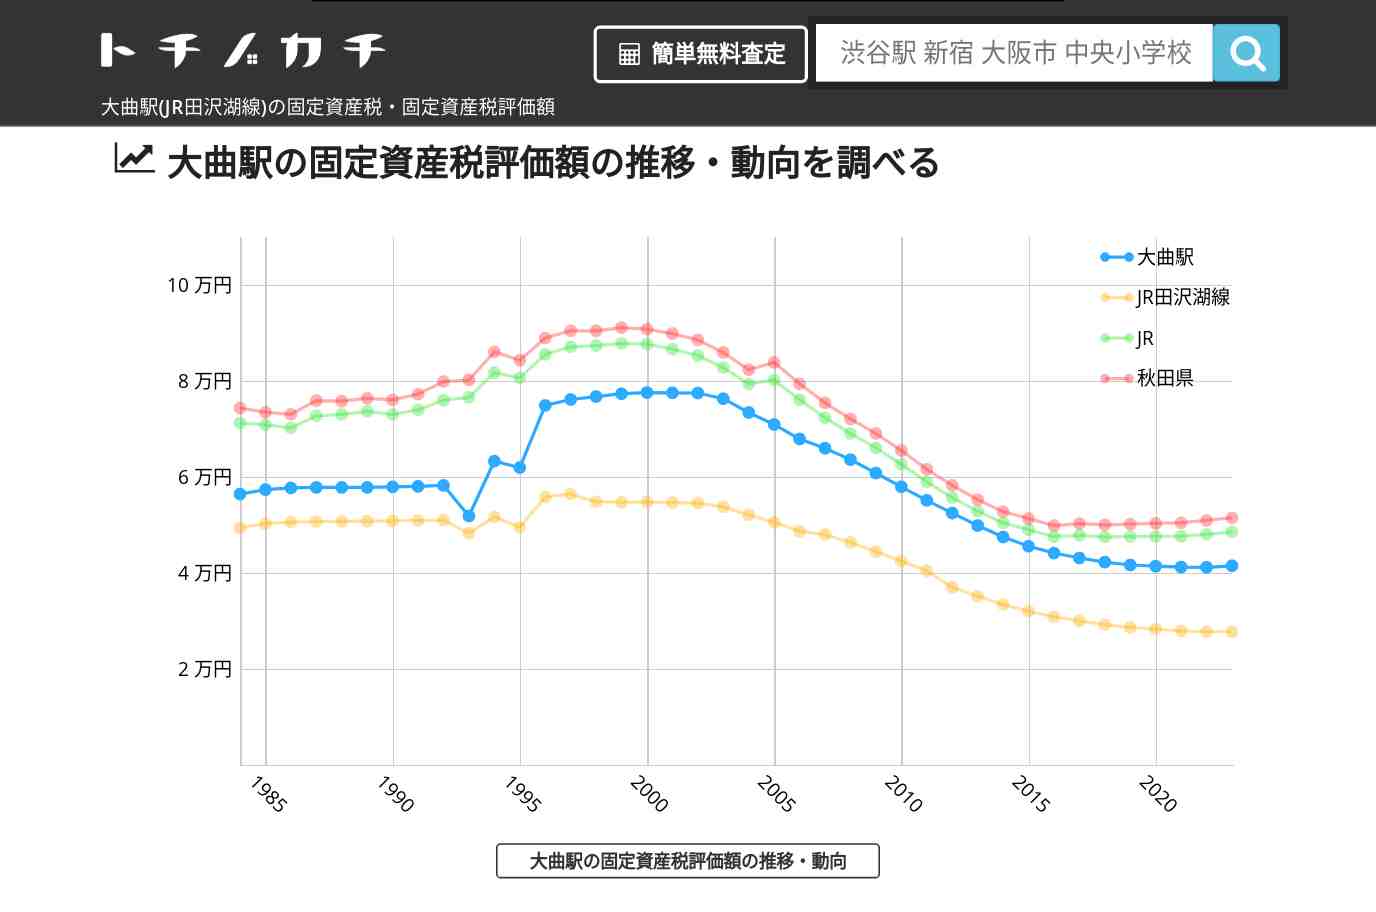 大曲駅(JR田沢湖線)の固定資産税・固定資産税評価額 | トチノカチ